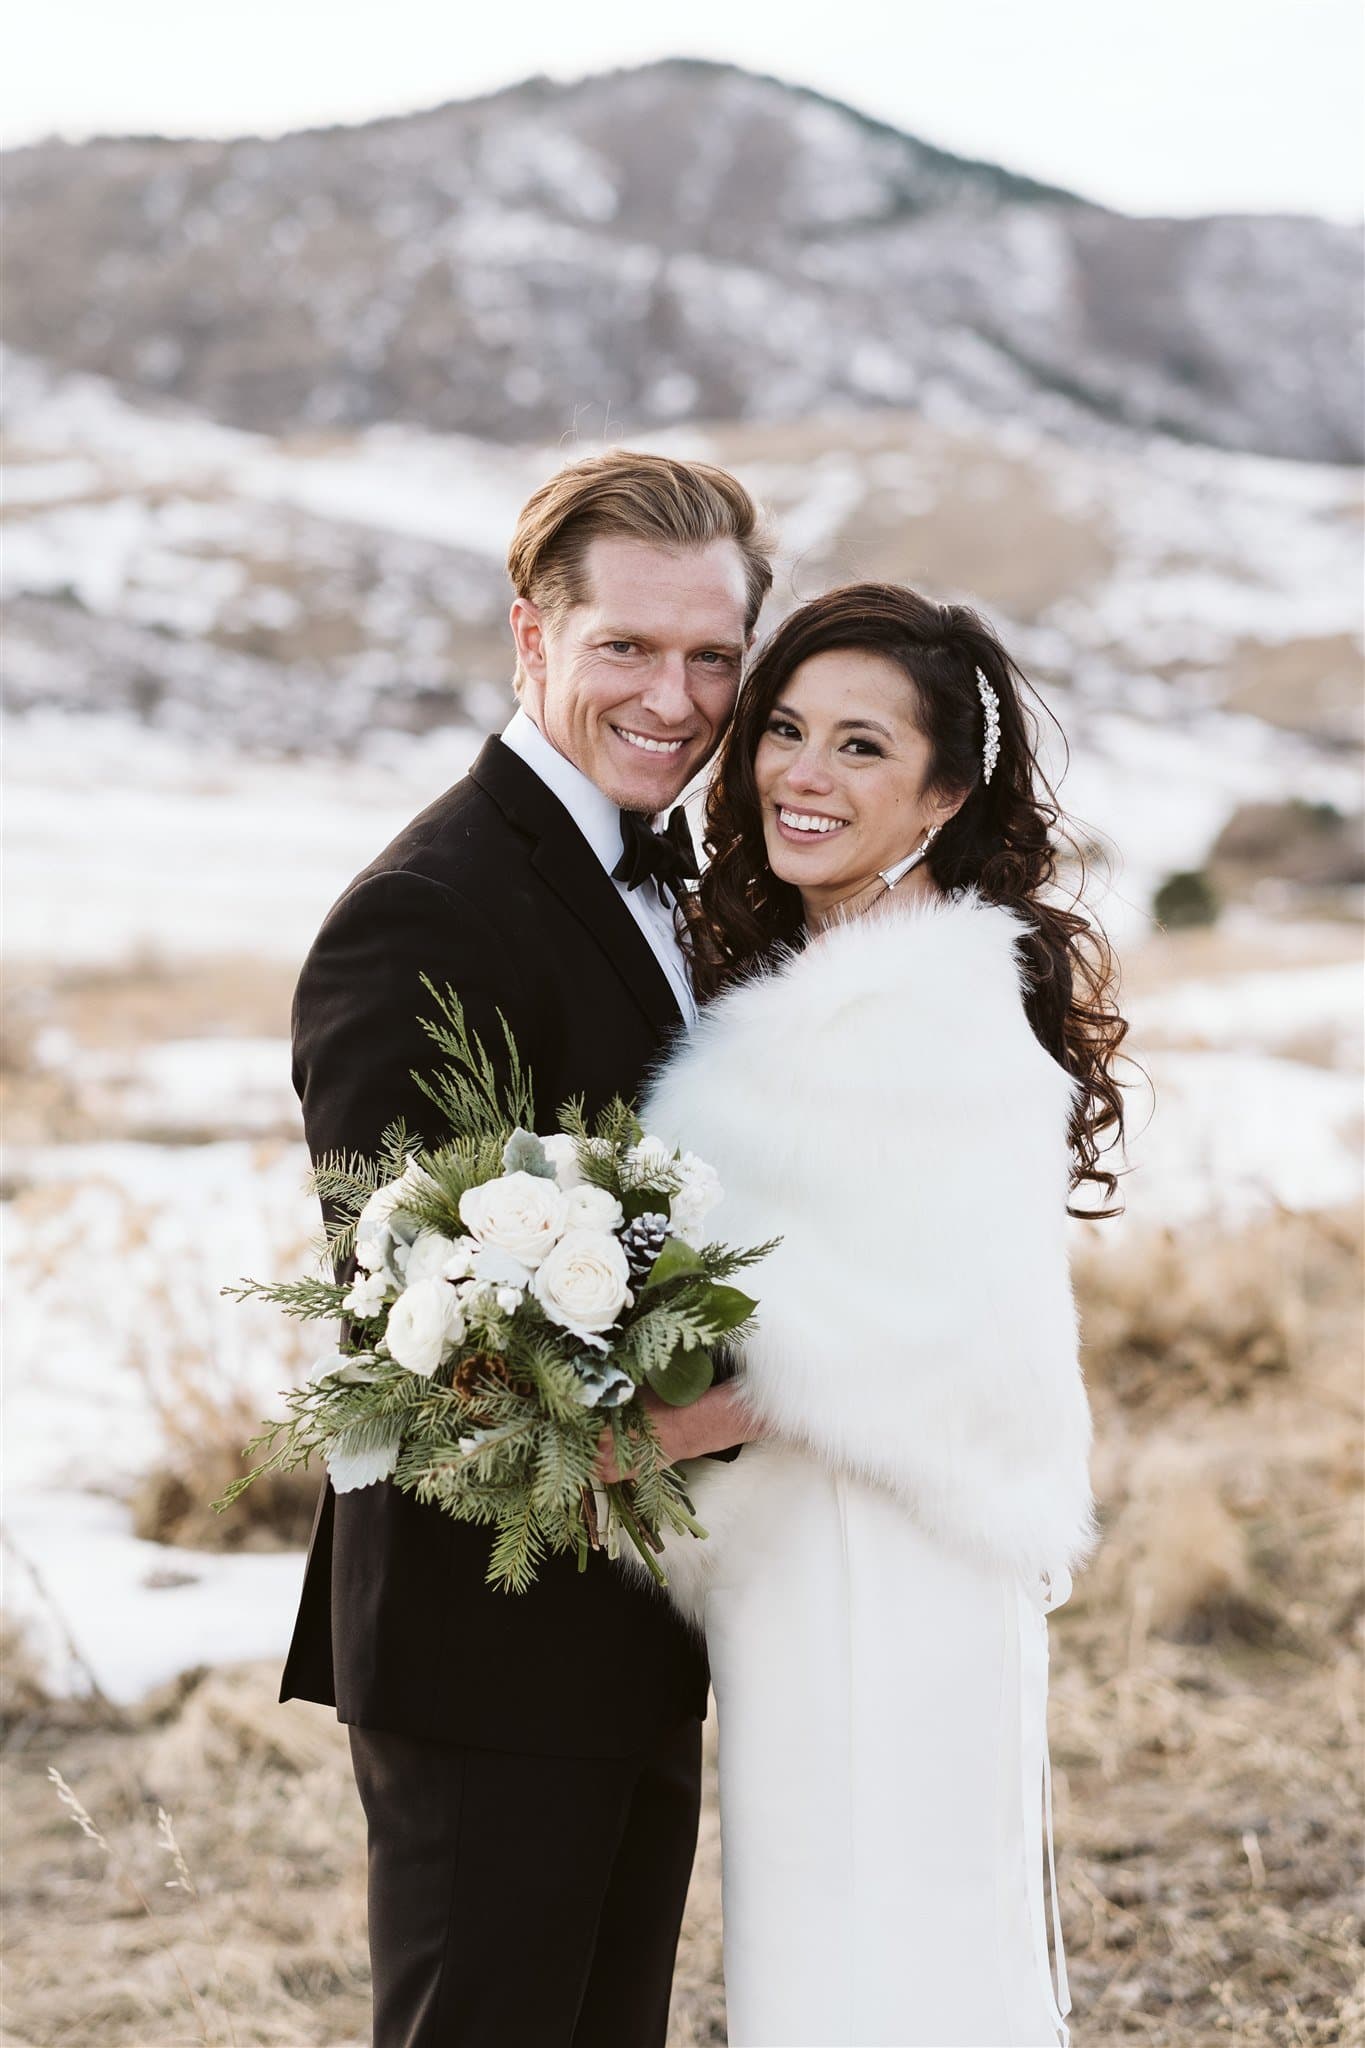 Bride and groom at winter wedding in Colorado